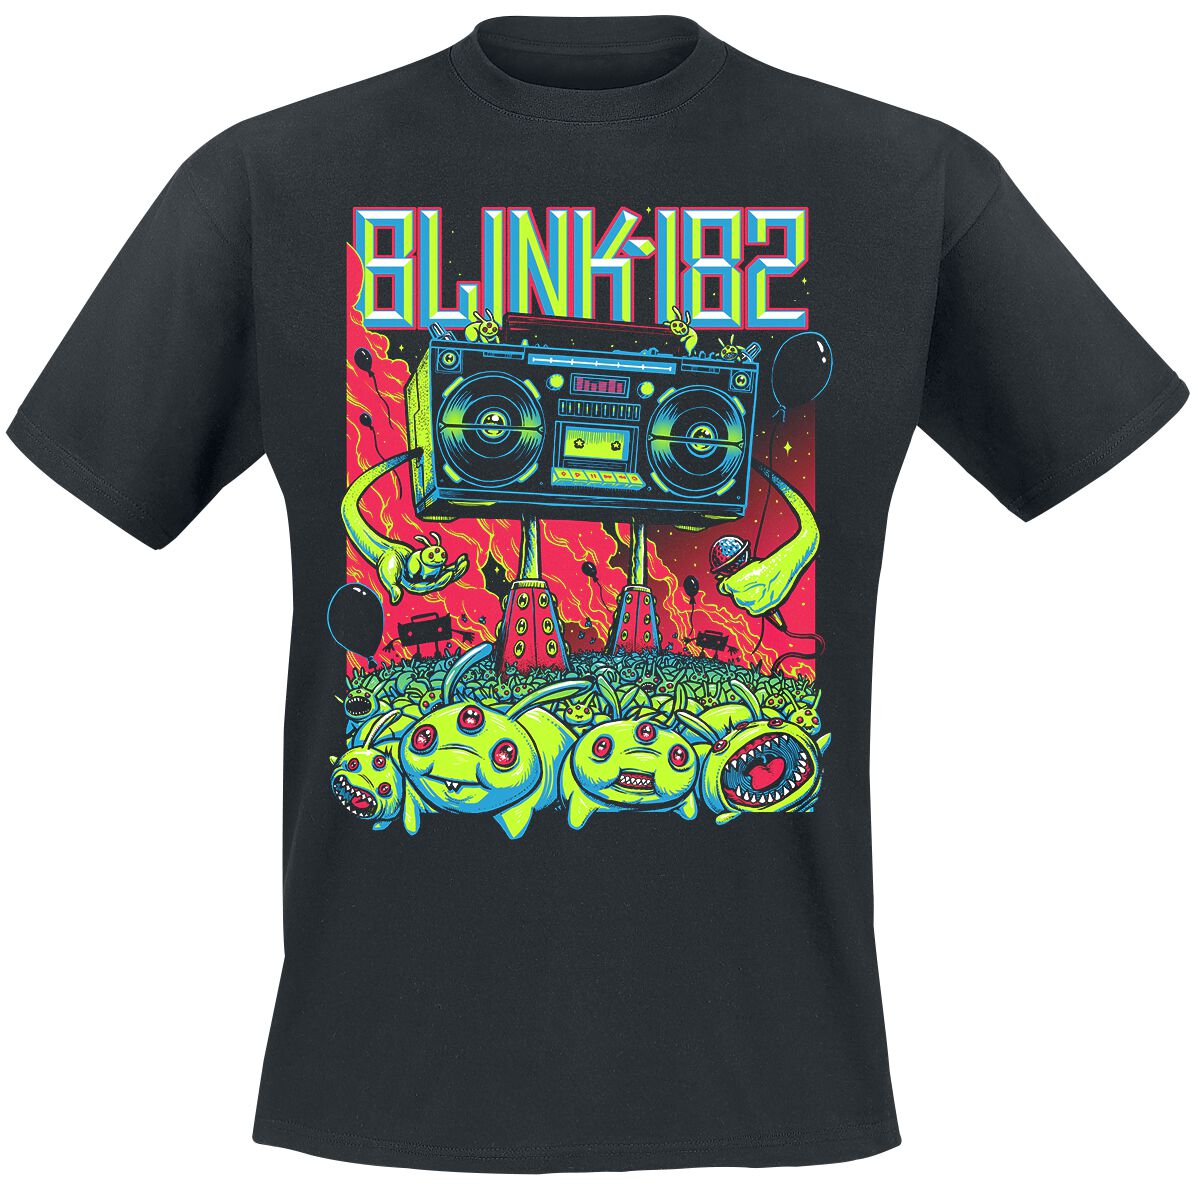 Blink-182 T-Shirt - Superboom - S bis 3XL - für Männer - Größe S - schwarz  - Lizenziertes Merchandise!